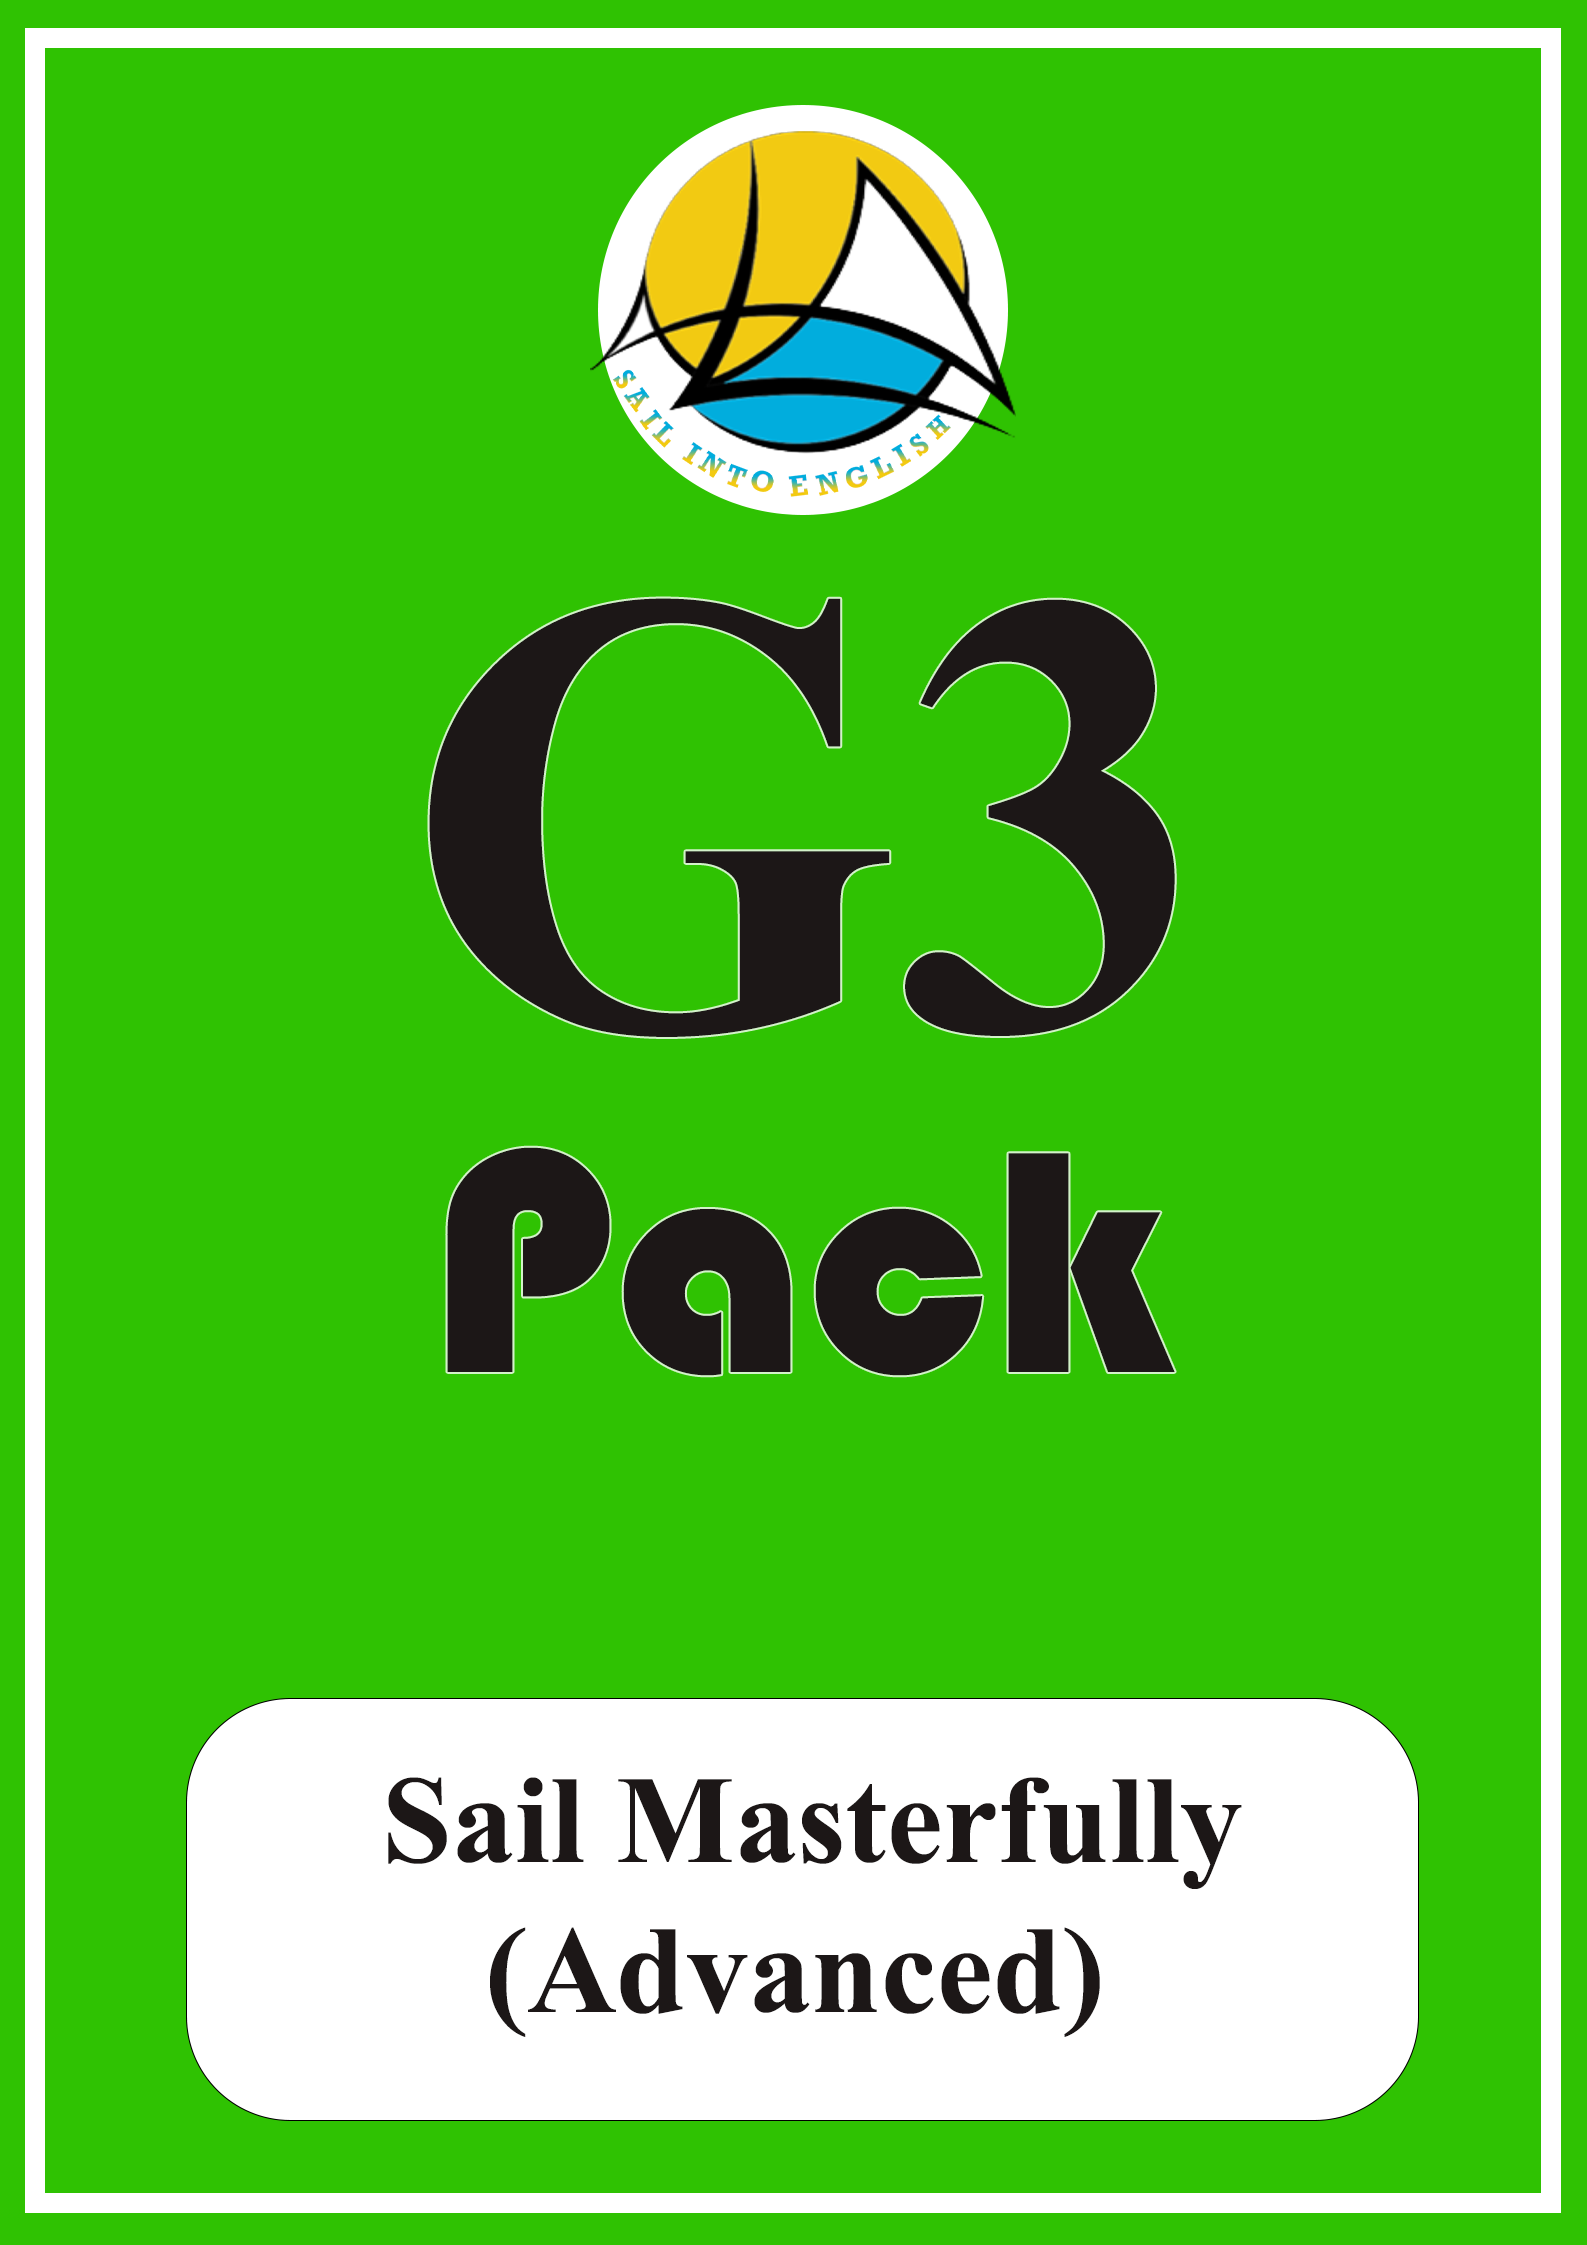 G3 PACK